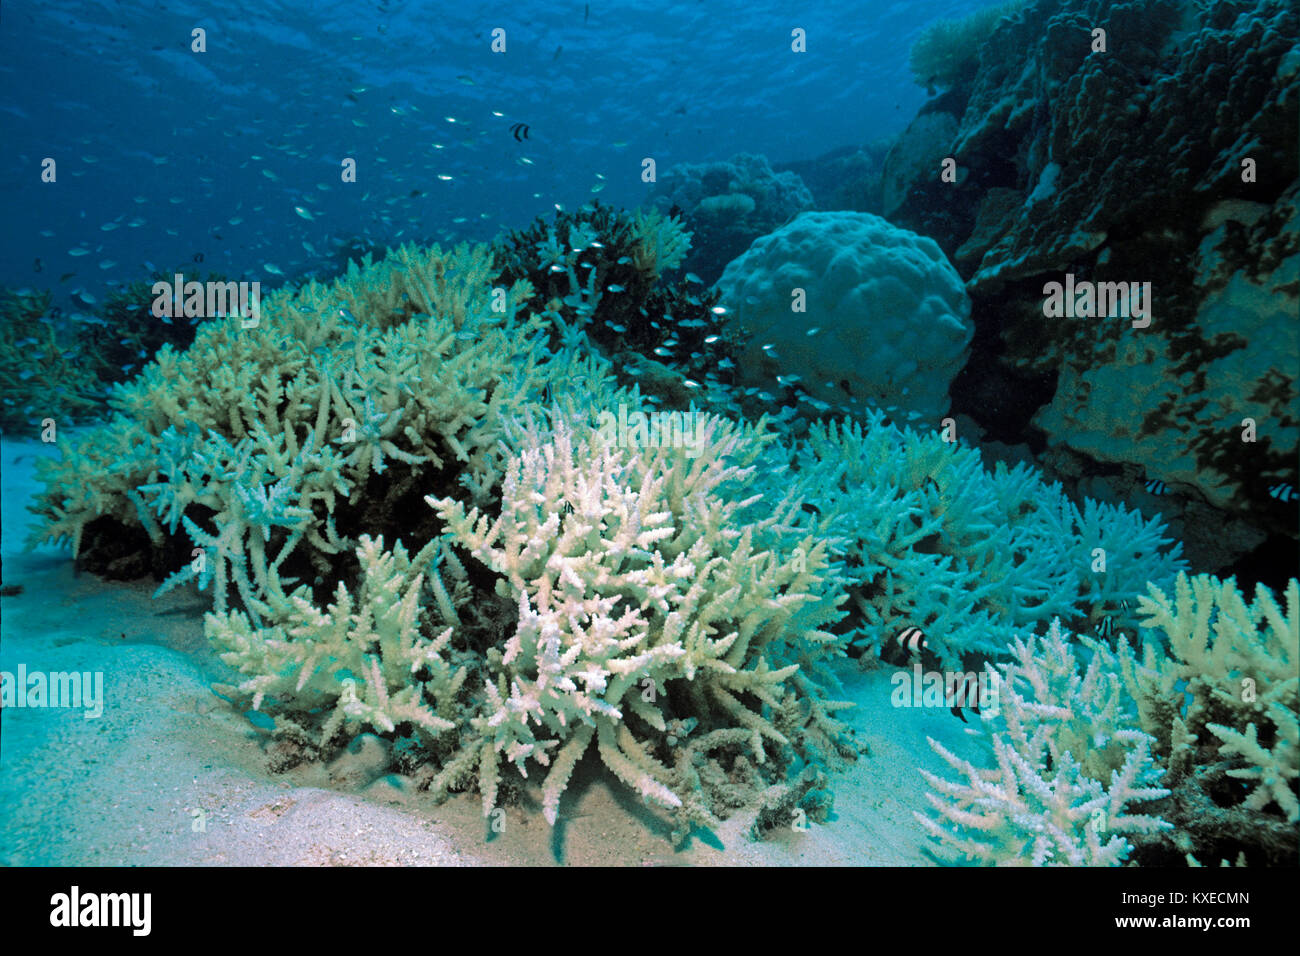 Gebleicht Geweihkorallen, Korallenbleiche, Folgen der globalen Erwärmung, Coral Reef auf den Malediven Inseln, Indischer Ozean, Asien Stockfoto